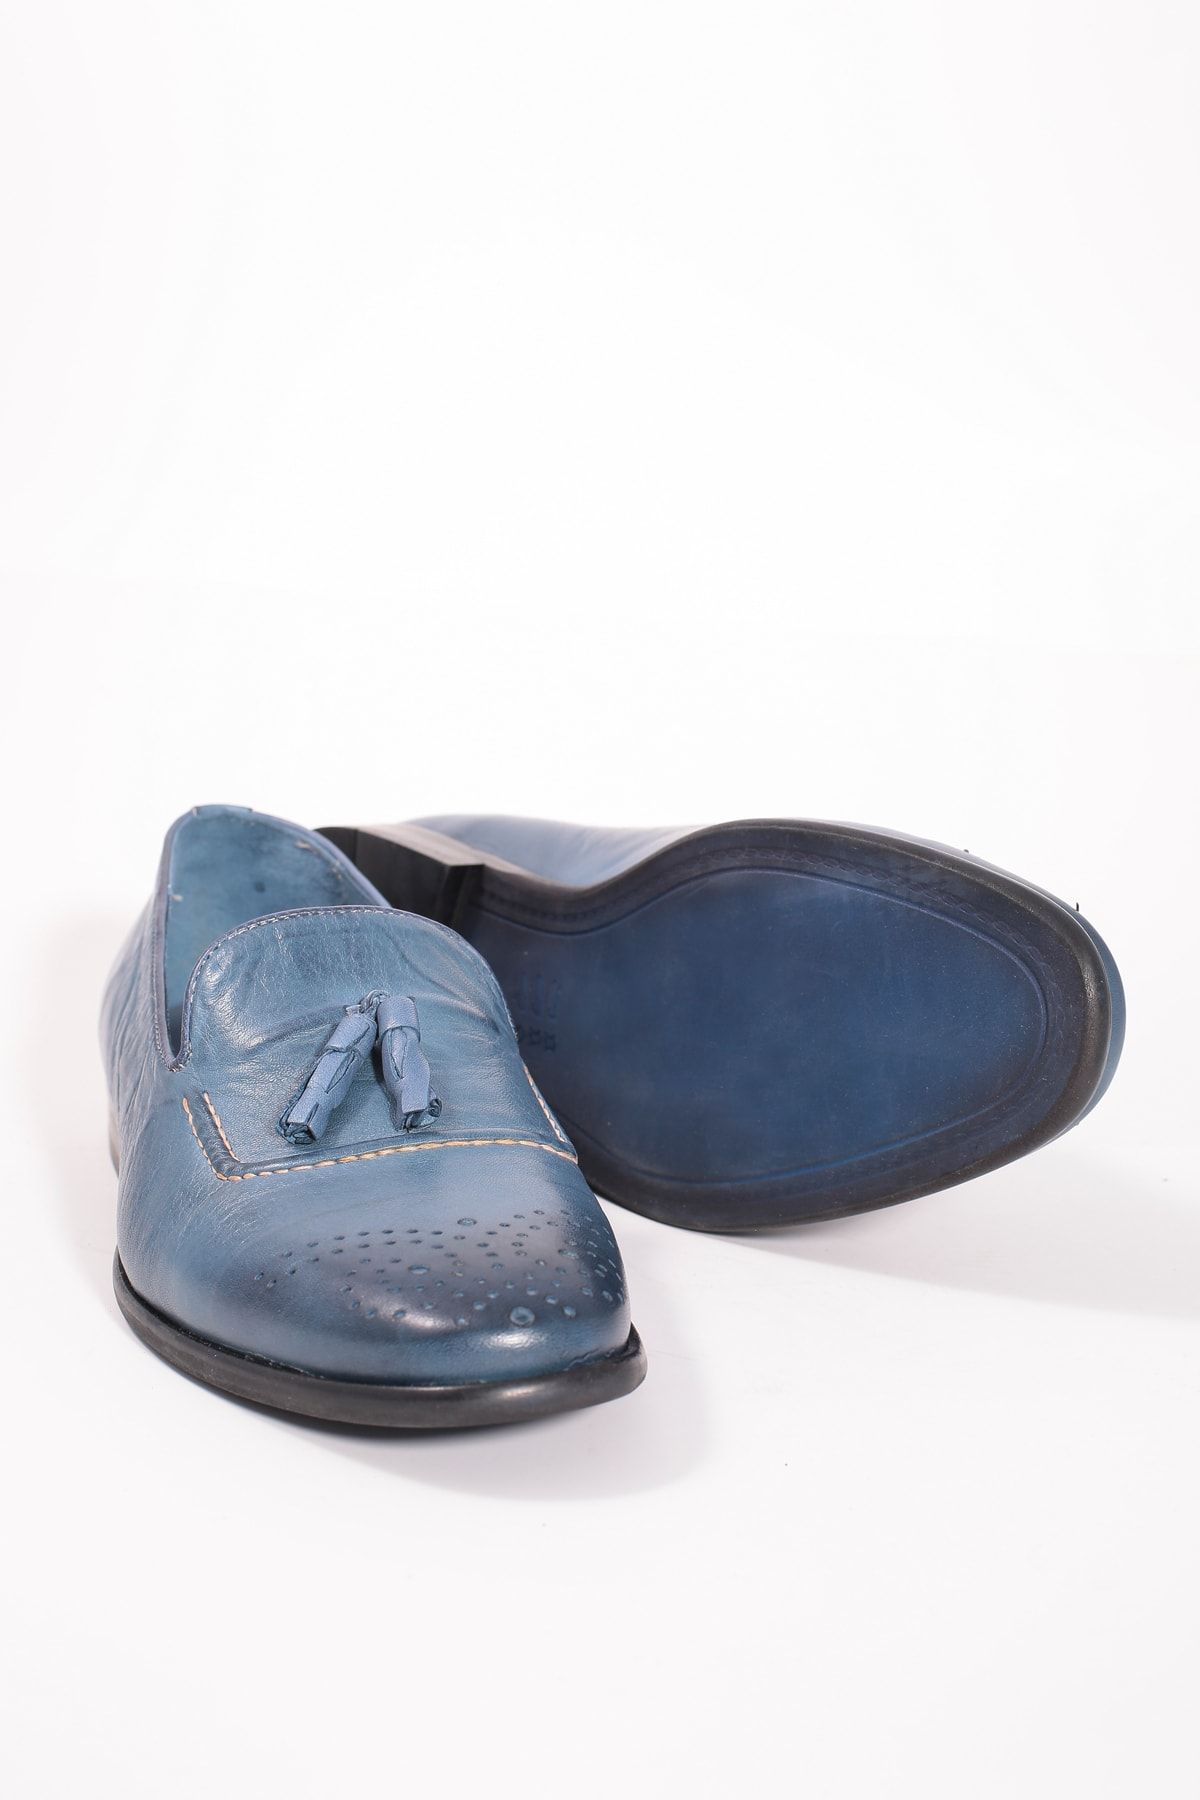 Faruk Sağın Erkek Husky Blue Casual Ayakkabı